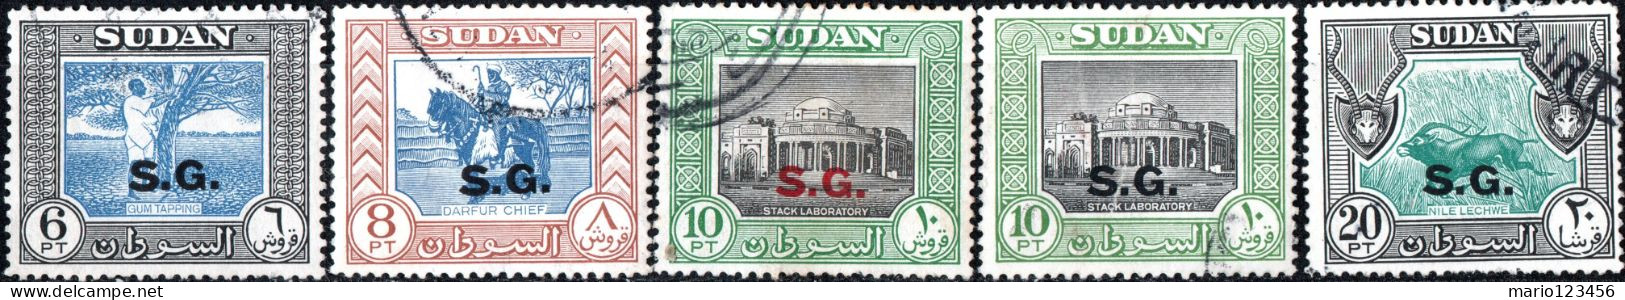 SUDAN BRITANNICO, SUDAN, PAESAGGI, LANDSCAPE, 1951, FRANCOBOLLI USATI Scott:SD O56-O59,O61 - Sudan (...-1951)